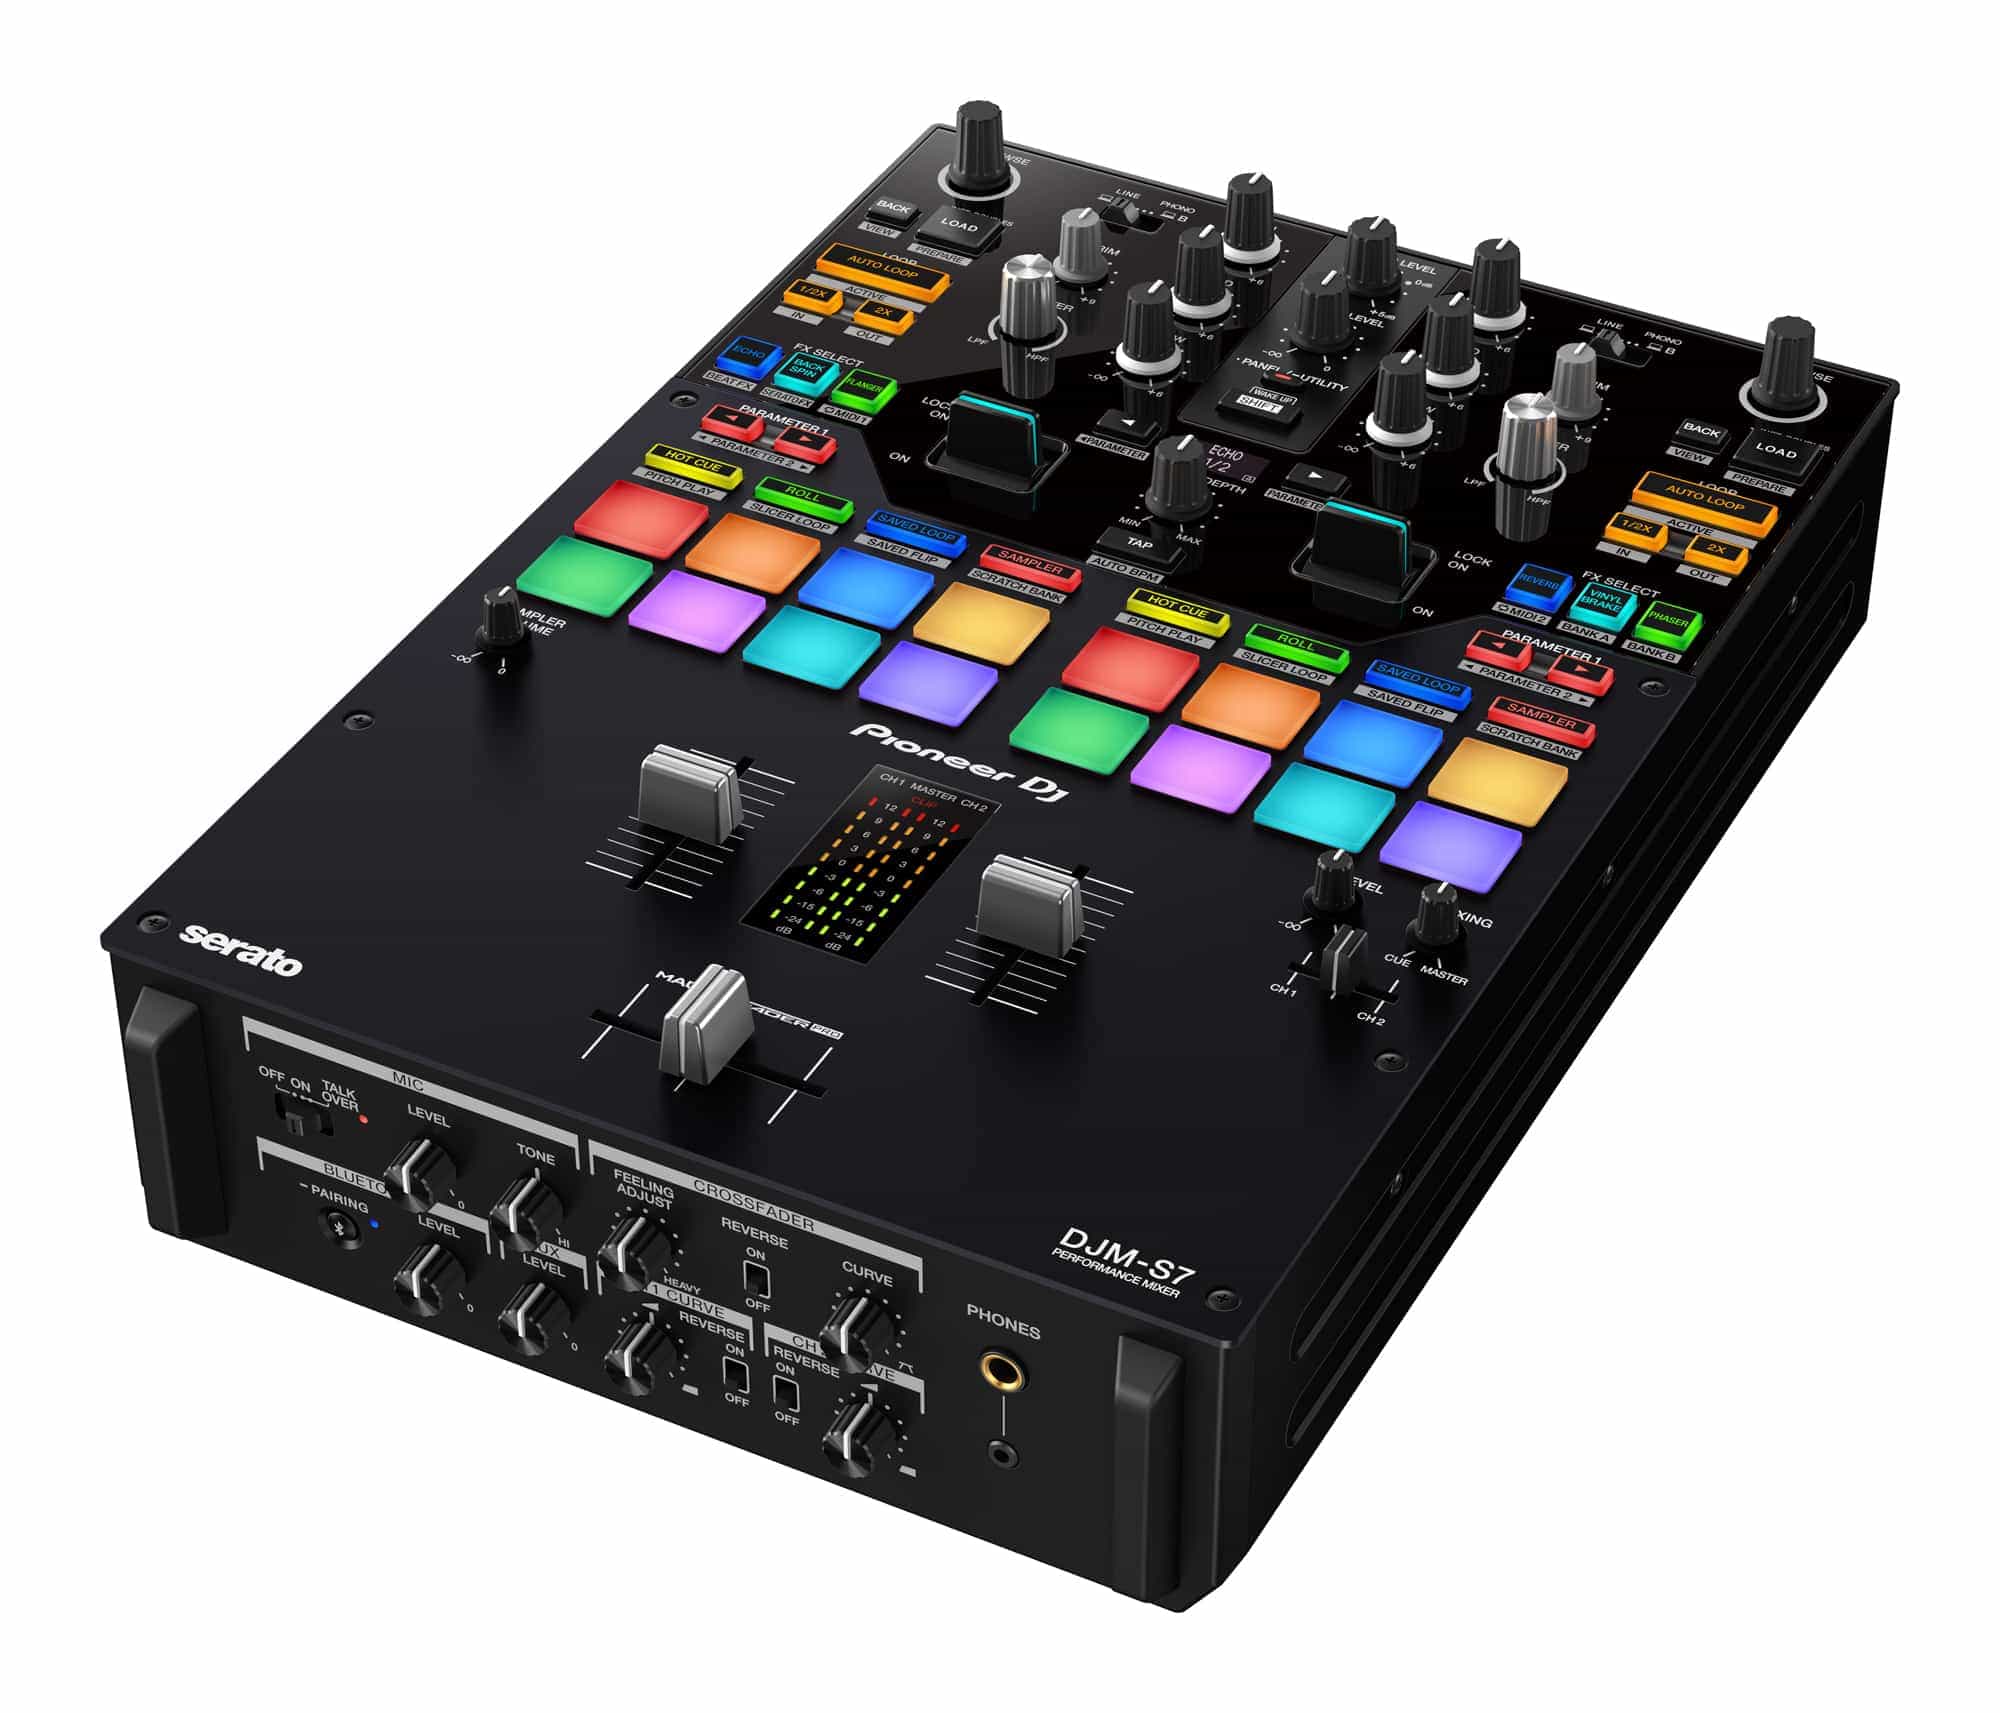 DJM-S7 de DJ Pioneer: un mezclador de batalla de 2 canales con la nueva función "Loop Midi" 3